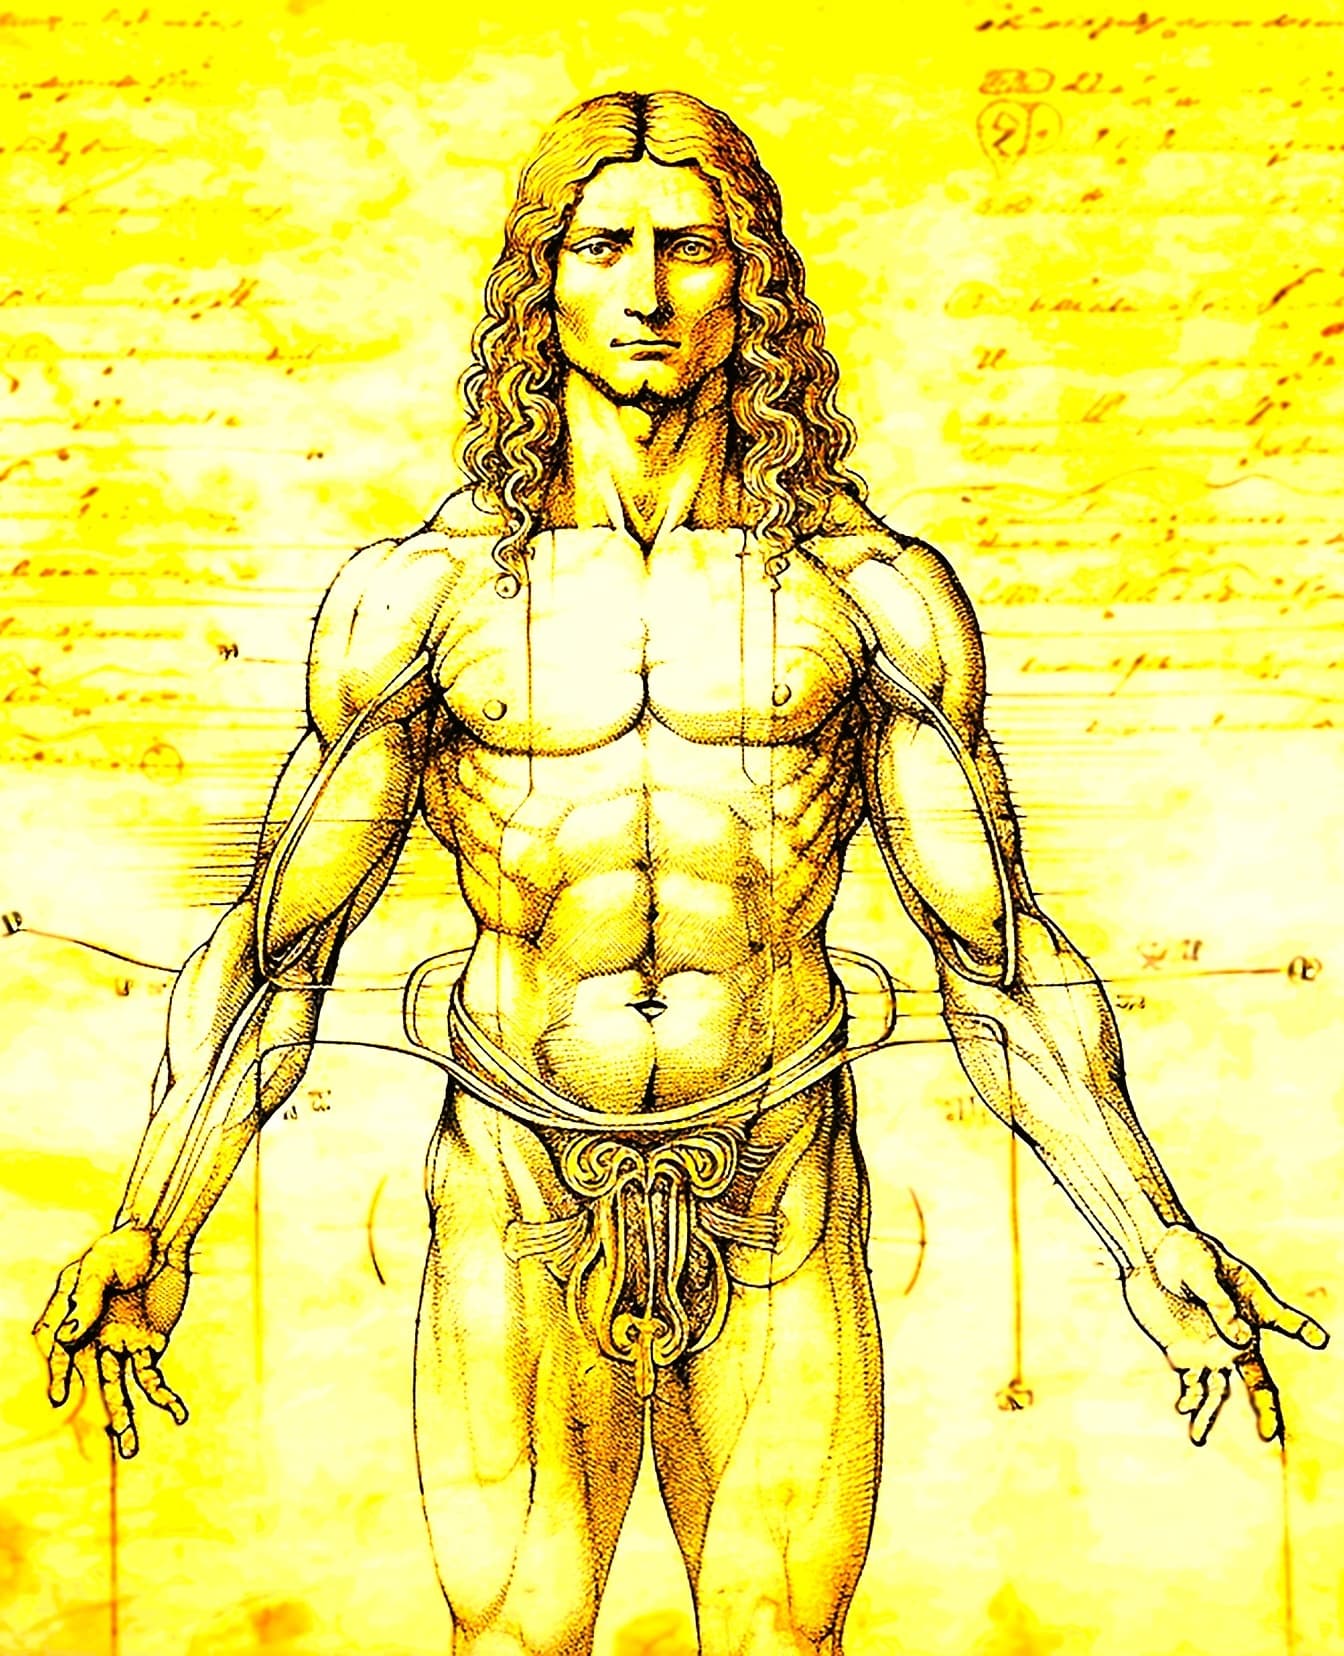 Tegning av anatomien til en muskuløs mann, i en stil med den vitruviske mannen av Leonardo da Vinci